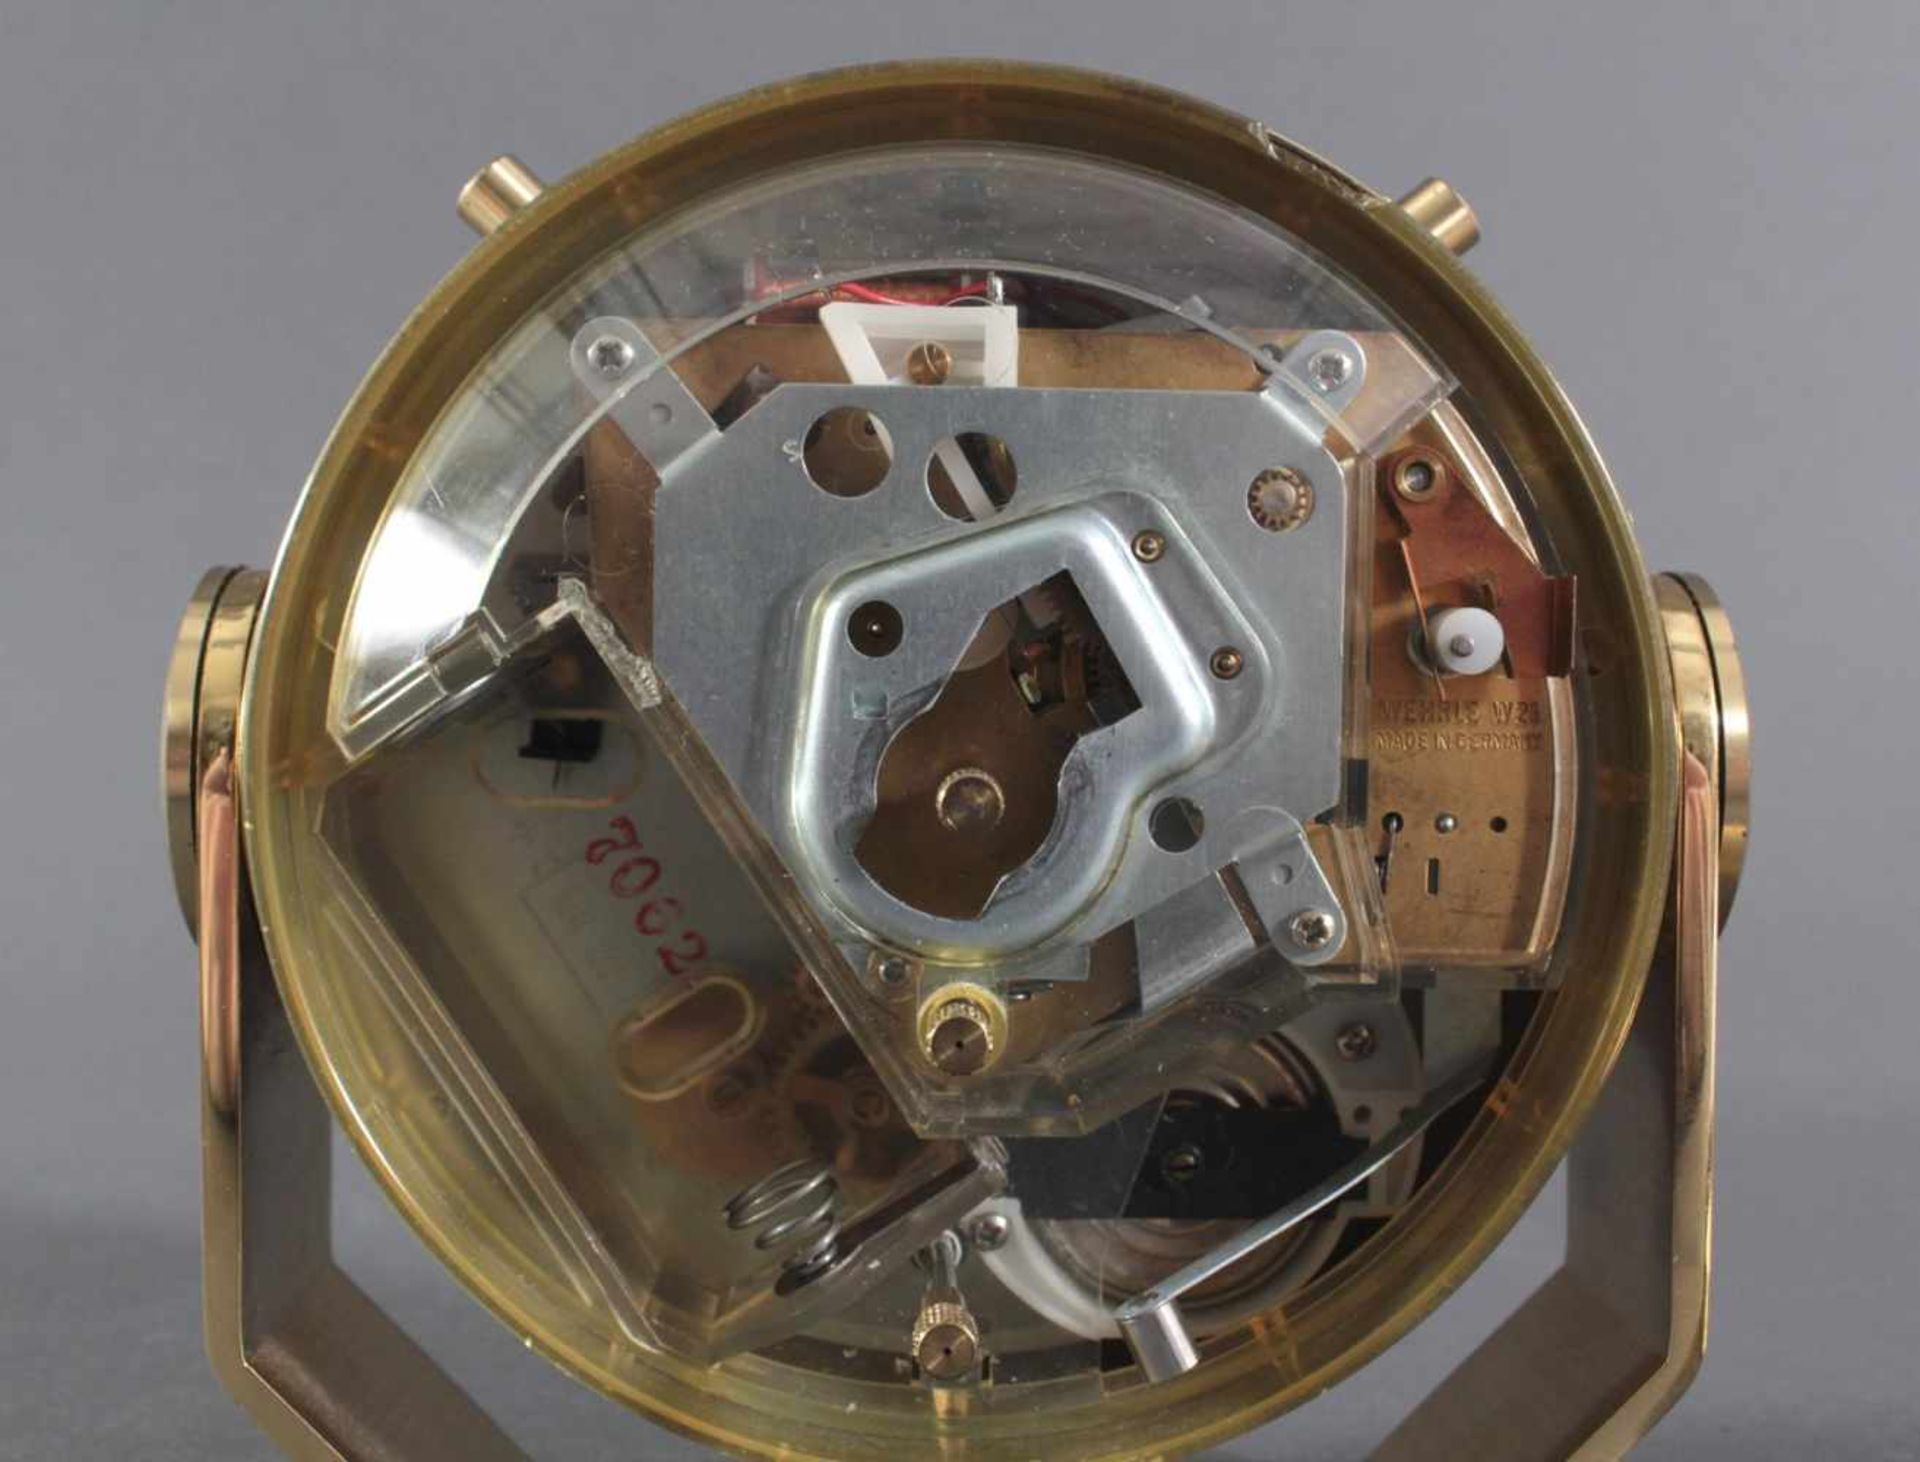 Wempe-Schiffsuhr, Chronometerwerke HamburgSchwenkbares Messinggehäuse, römisches Zifferblatt mit - Image 6 of 7